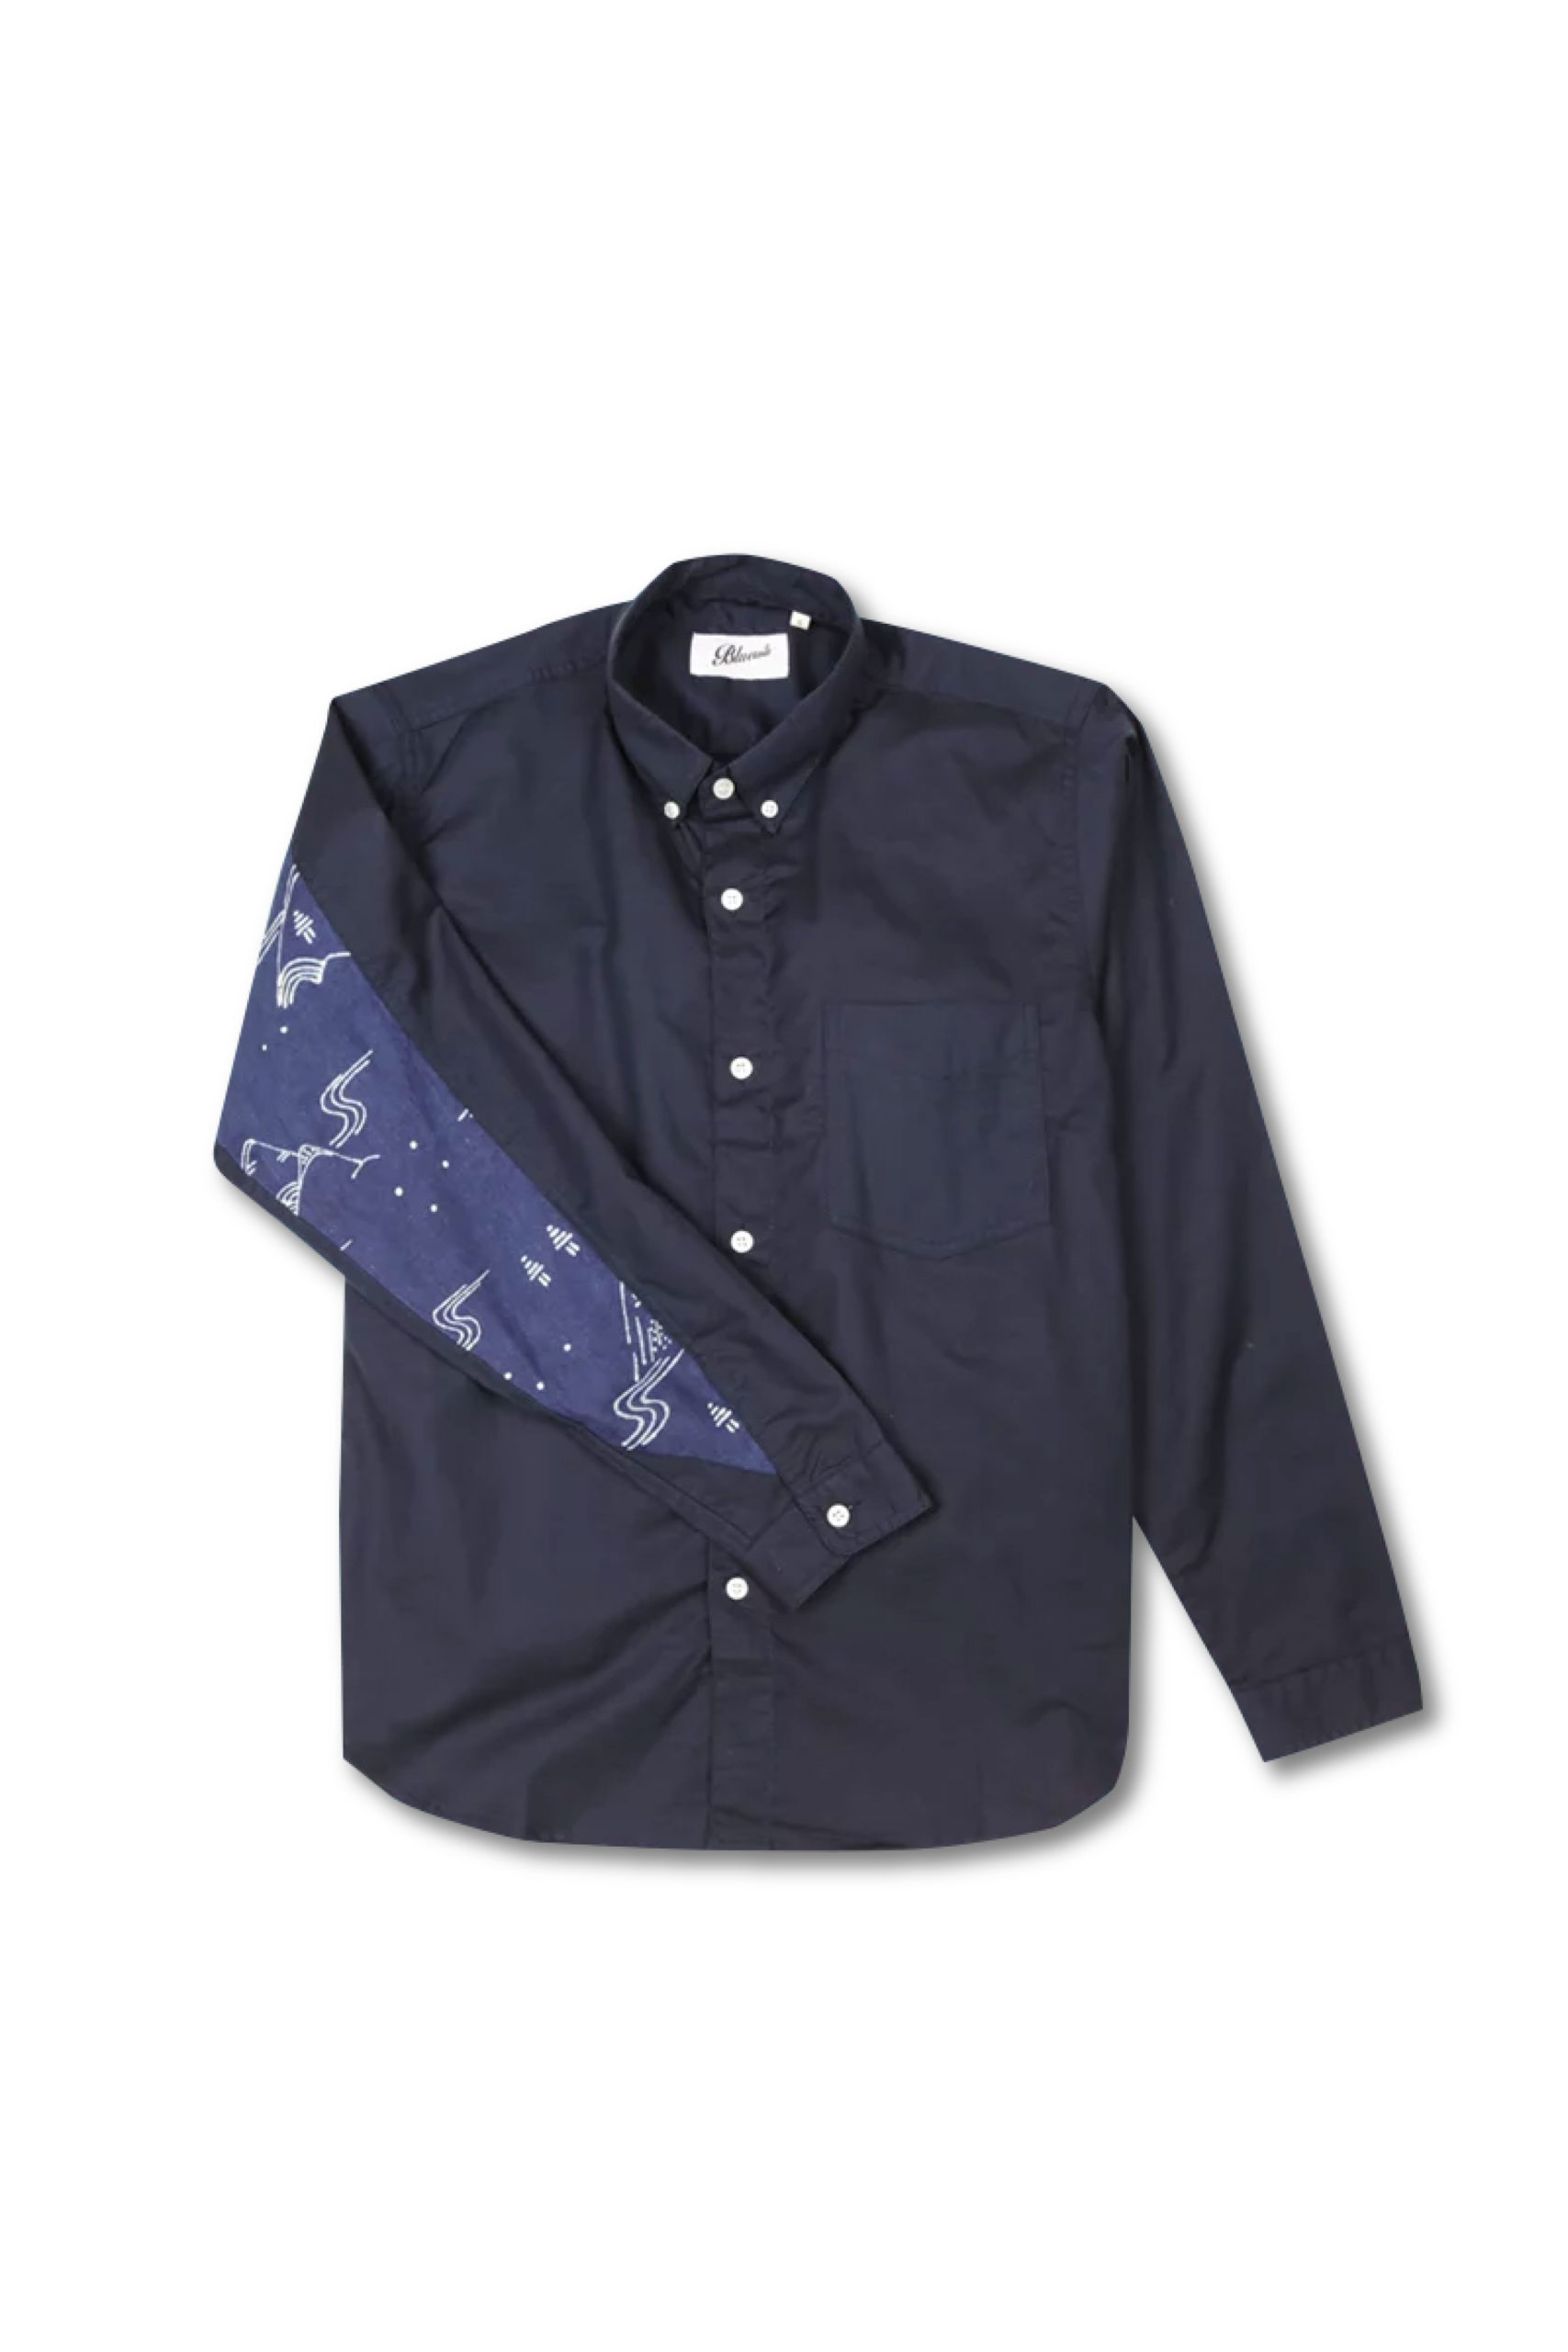 Navy Gunung Dyer’s Sleeve Shirt – Bluesville